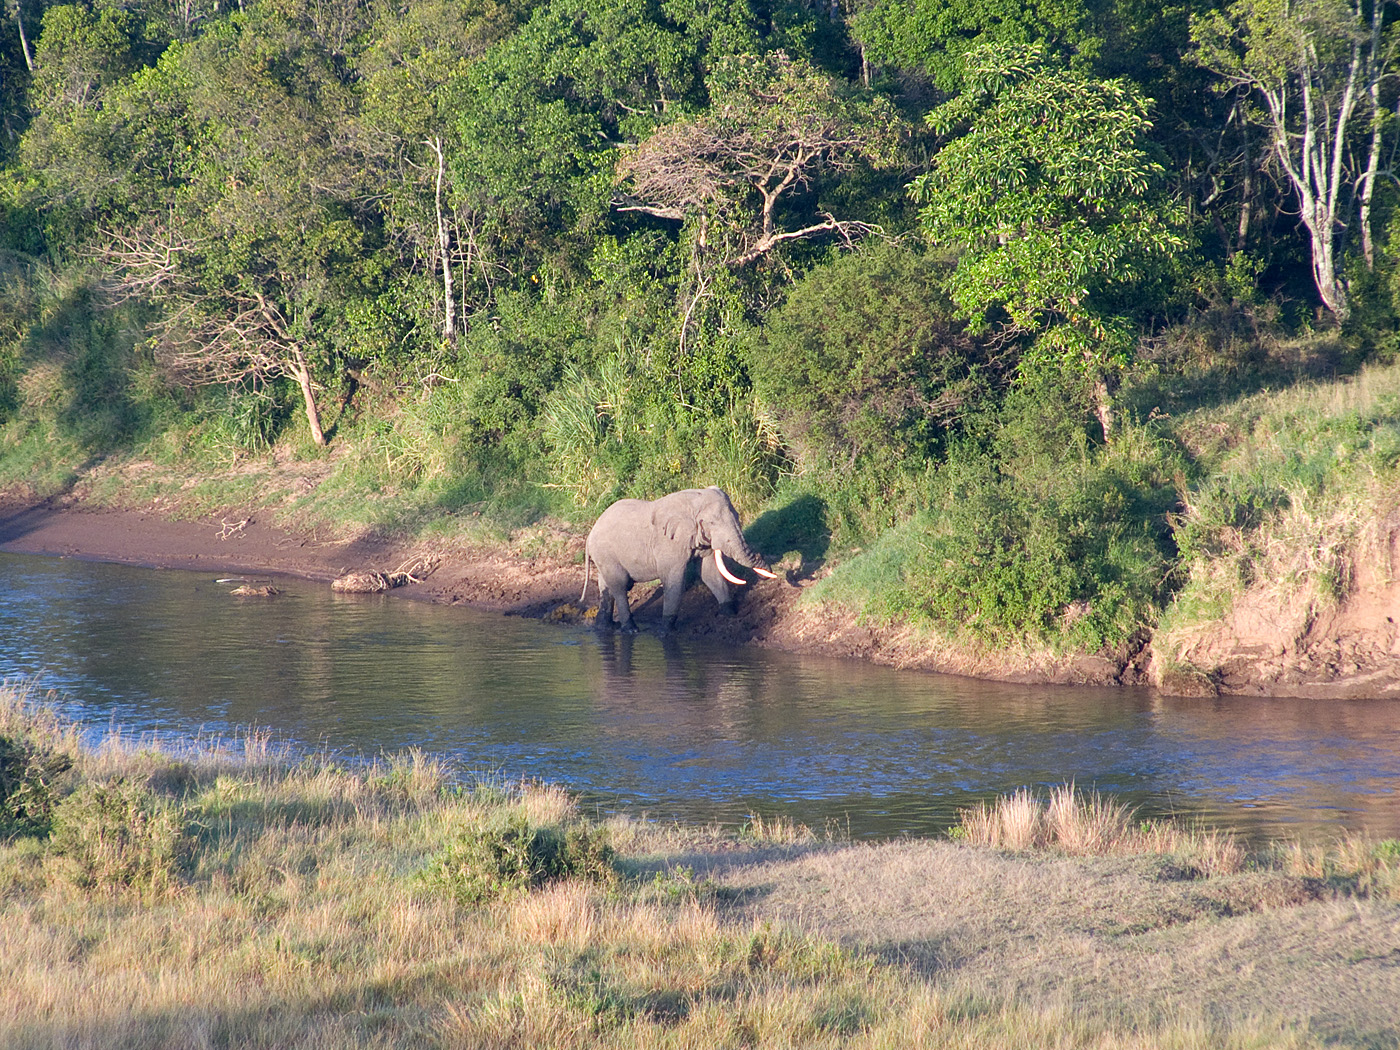 Elephant in Mara River from Hot Air Balloon, Masai Mara